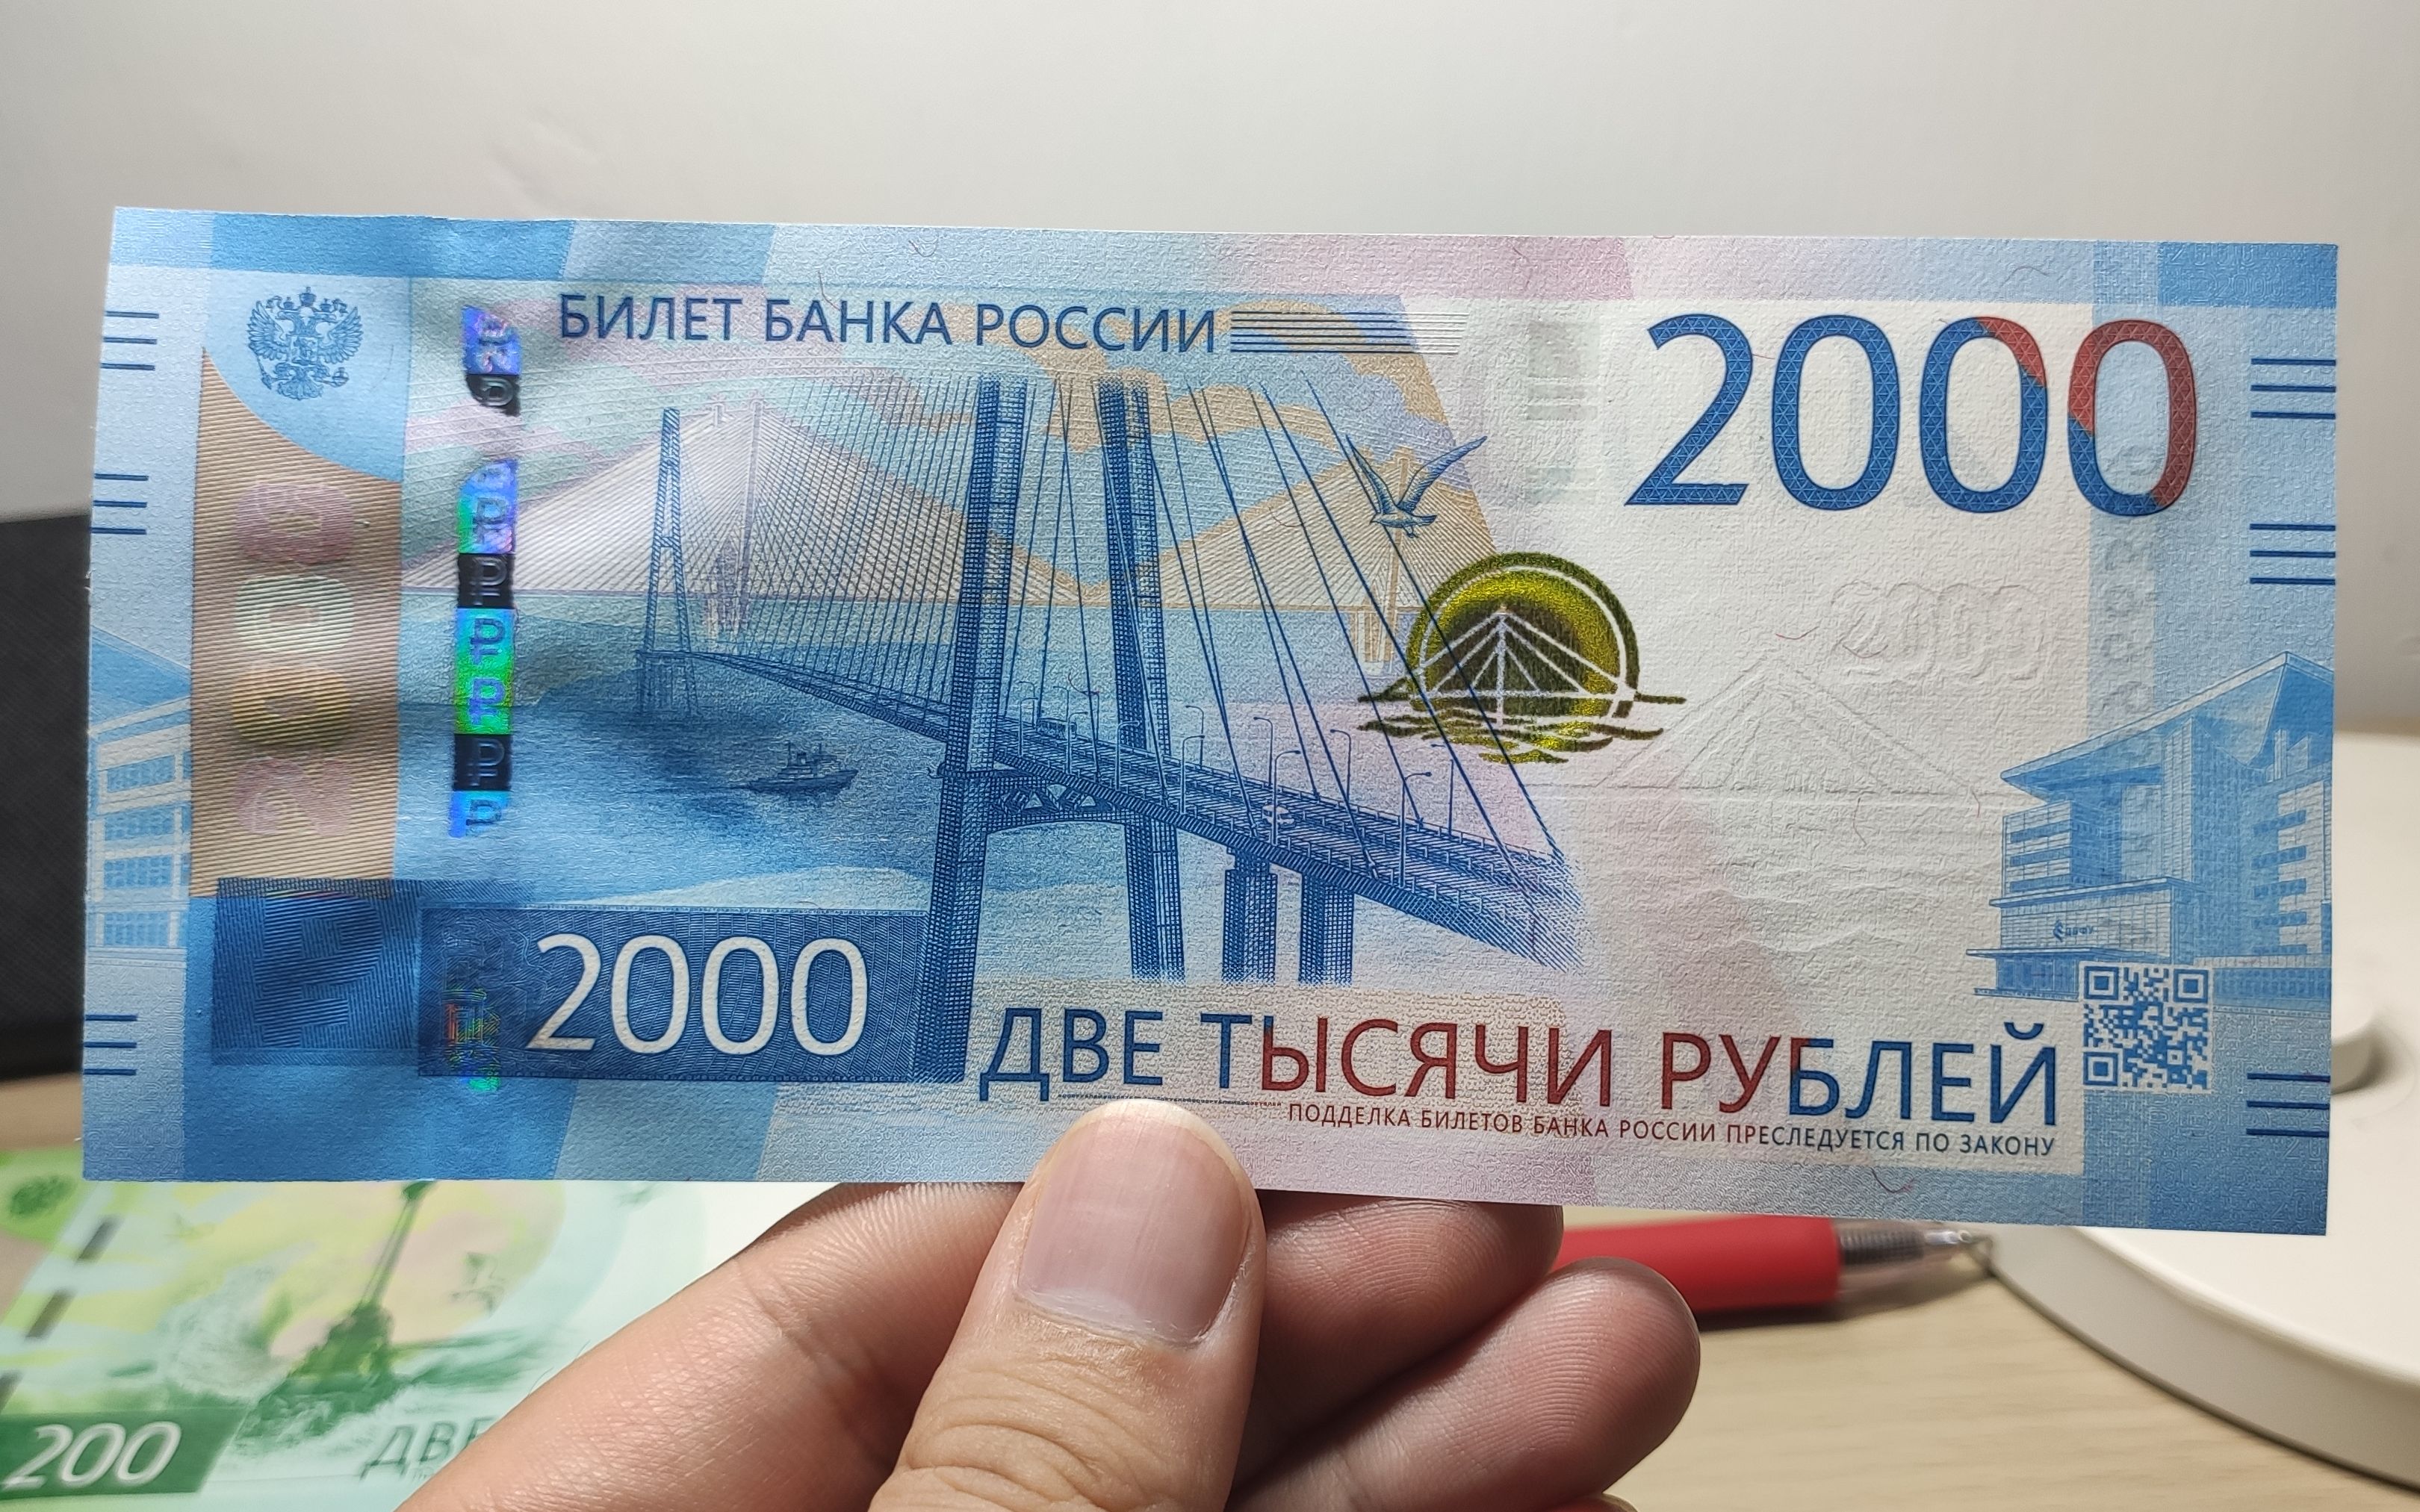 一招教你了解俄俄罗斯货币【收藏贴】 - 知乎